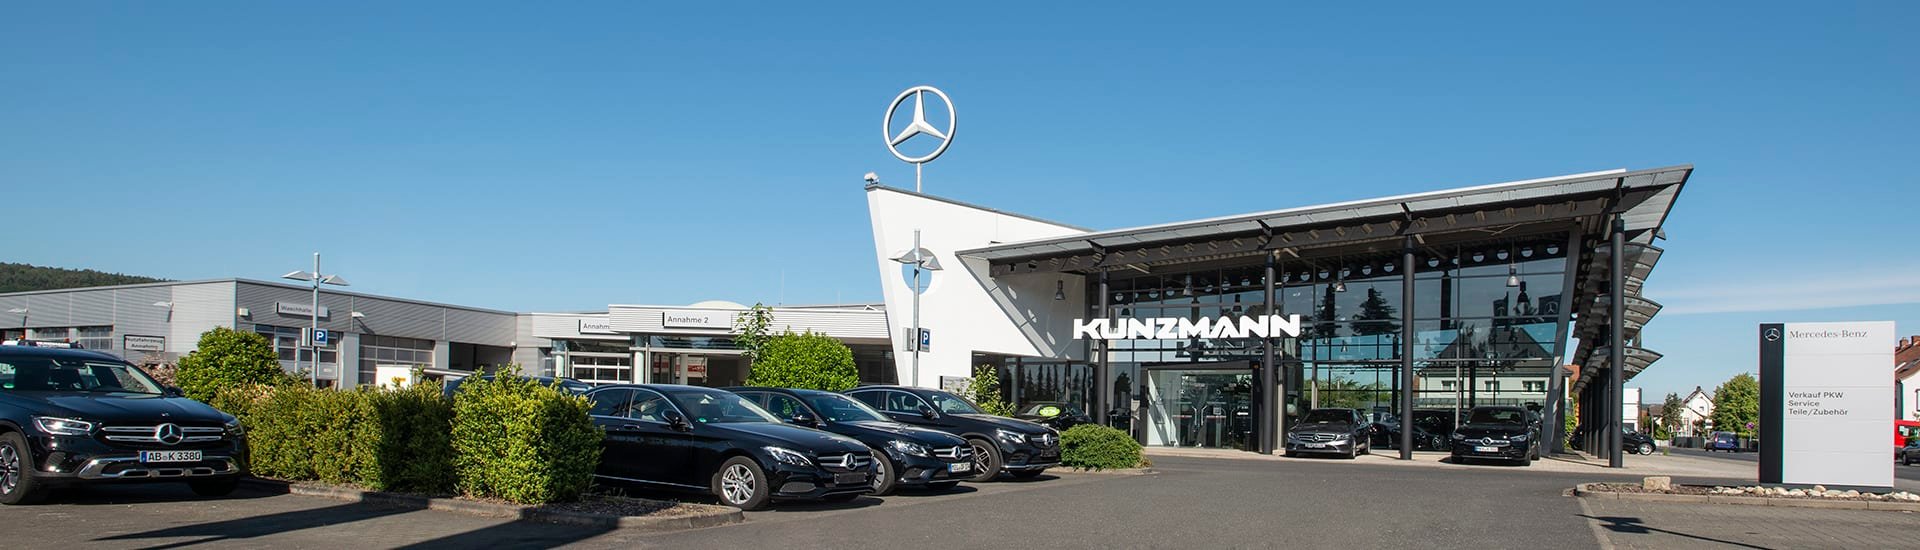 Kunzmann Werkstatt in Wörth für PKW, Transporter, Lkw und Omnibus